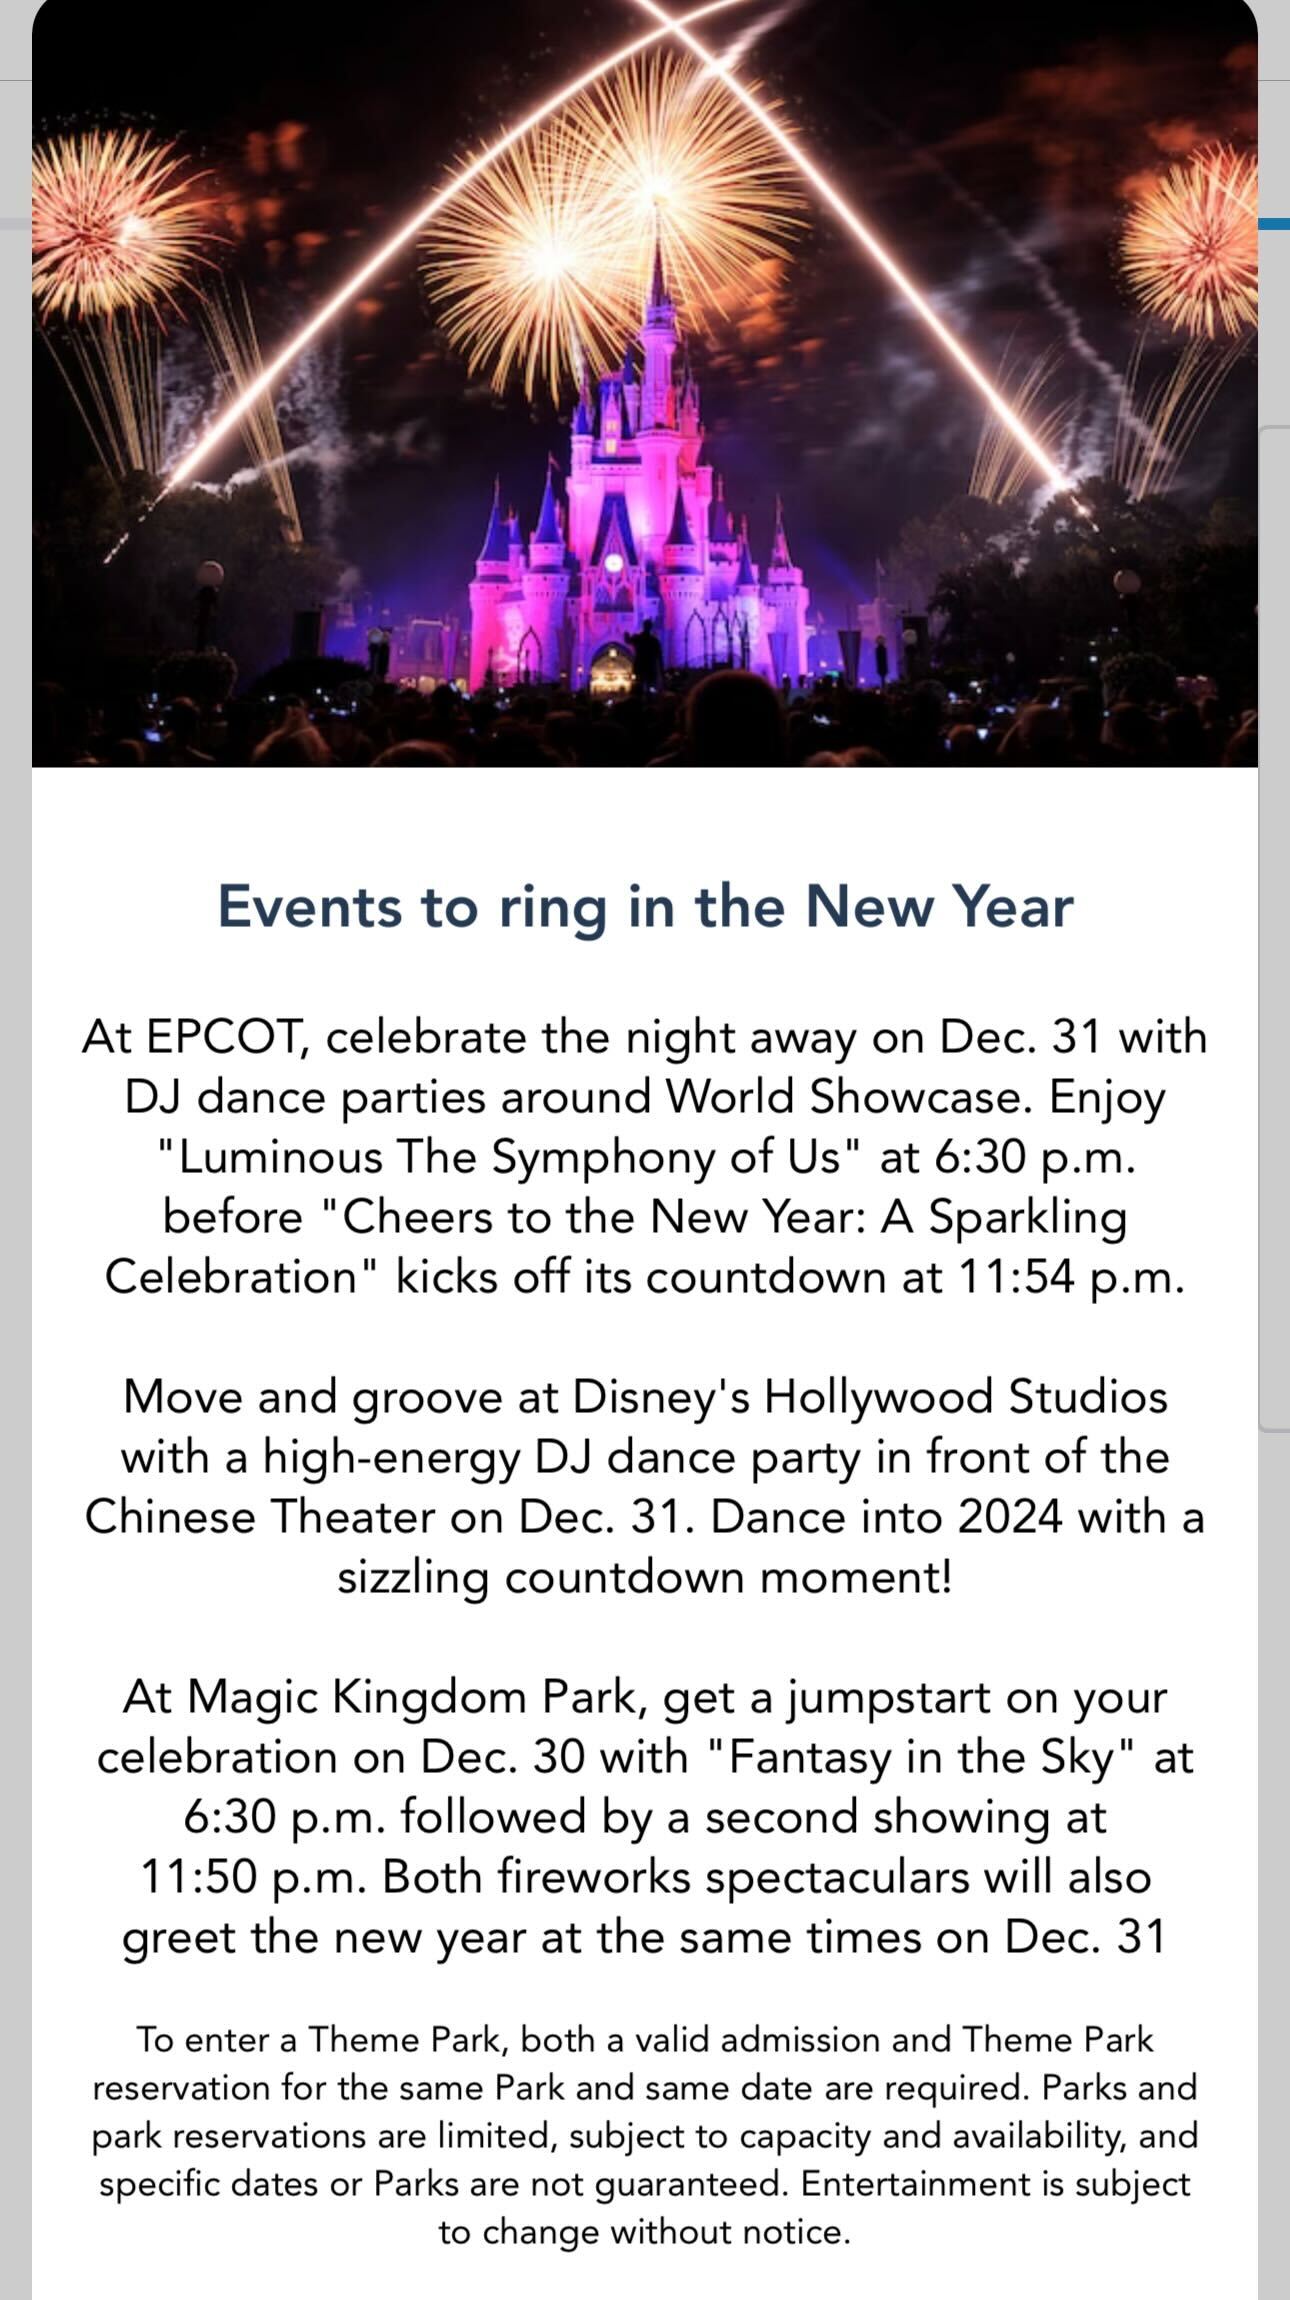 Walt Disney World New Year's Eve schedule